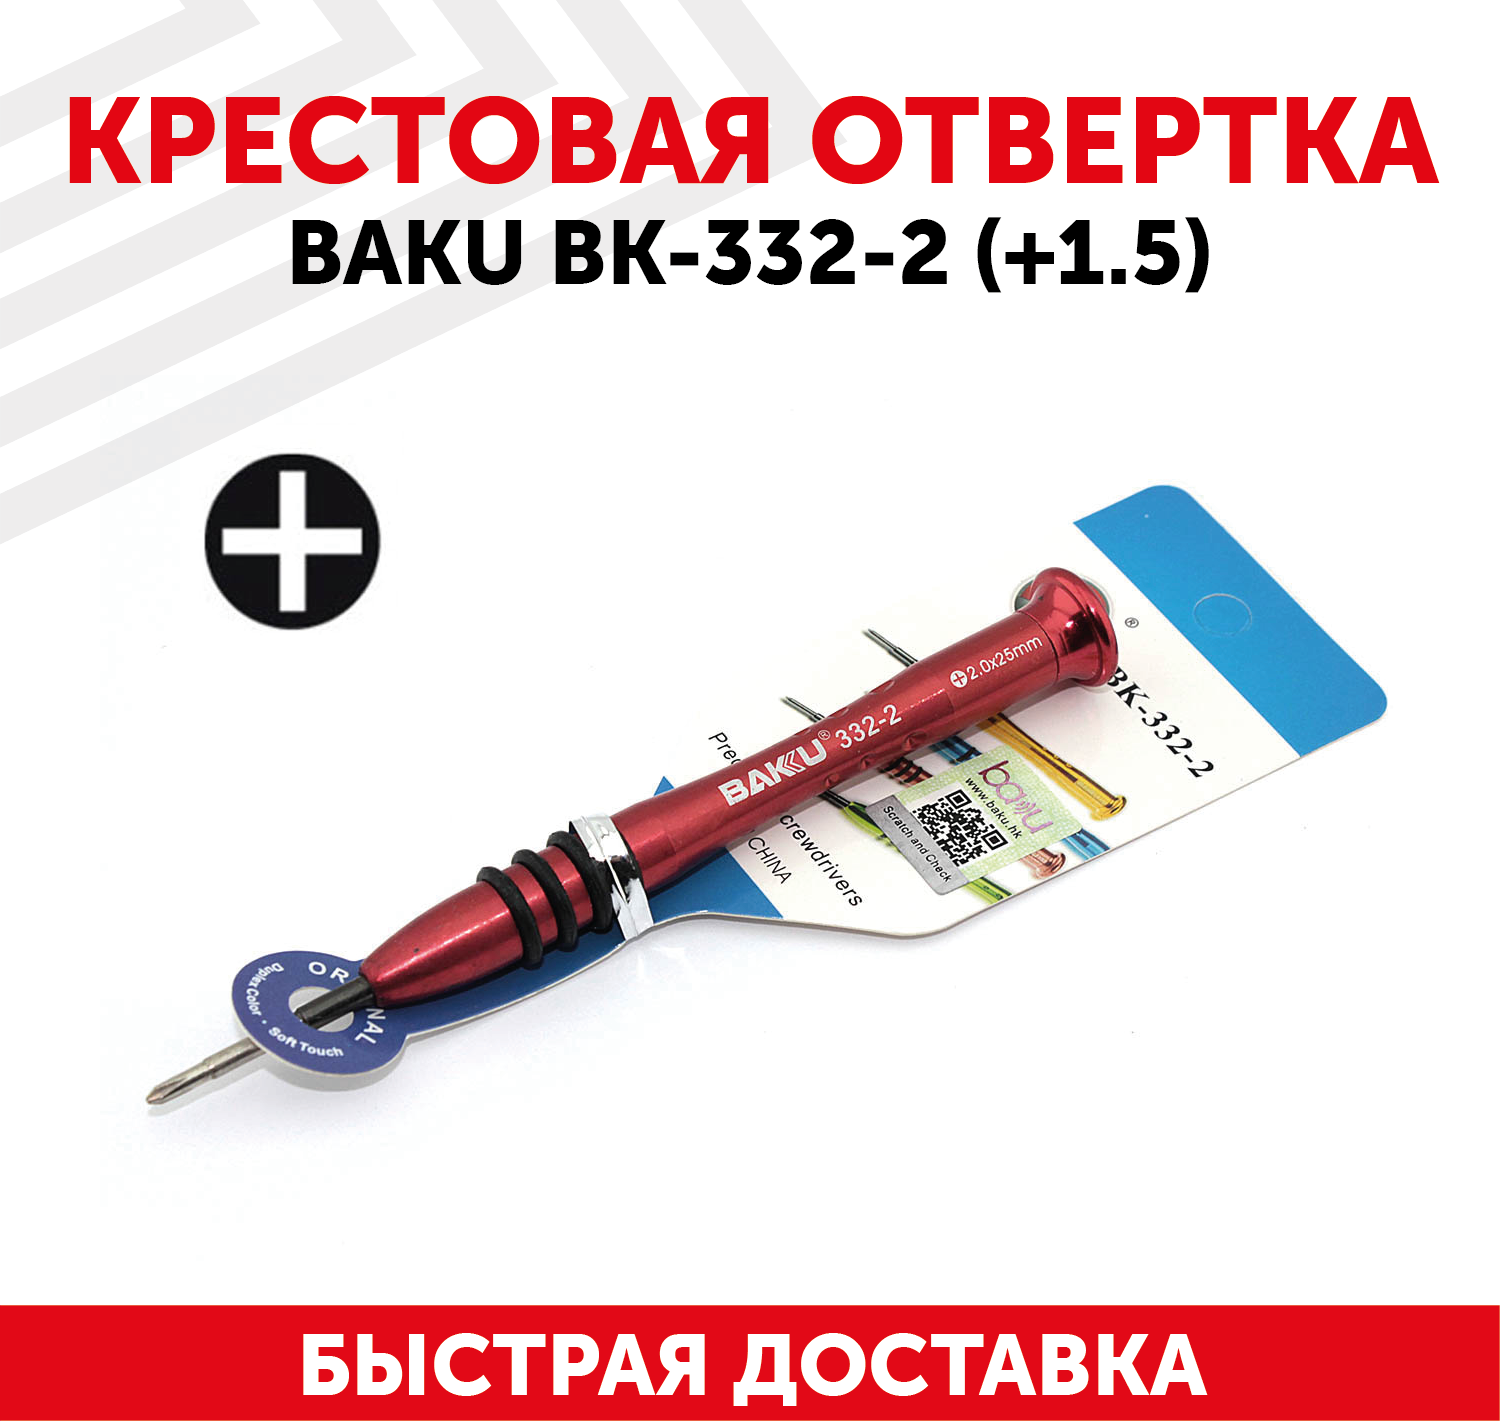 Отвертка плюсовая BAKU BK-332-2 (+2.0)